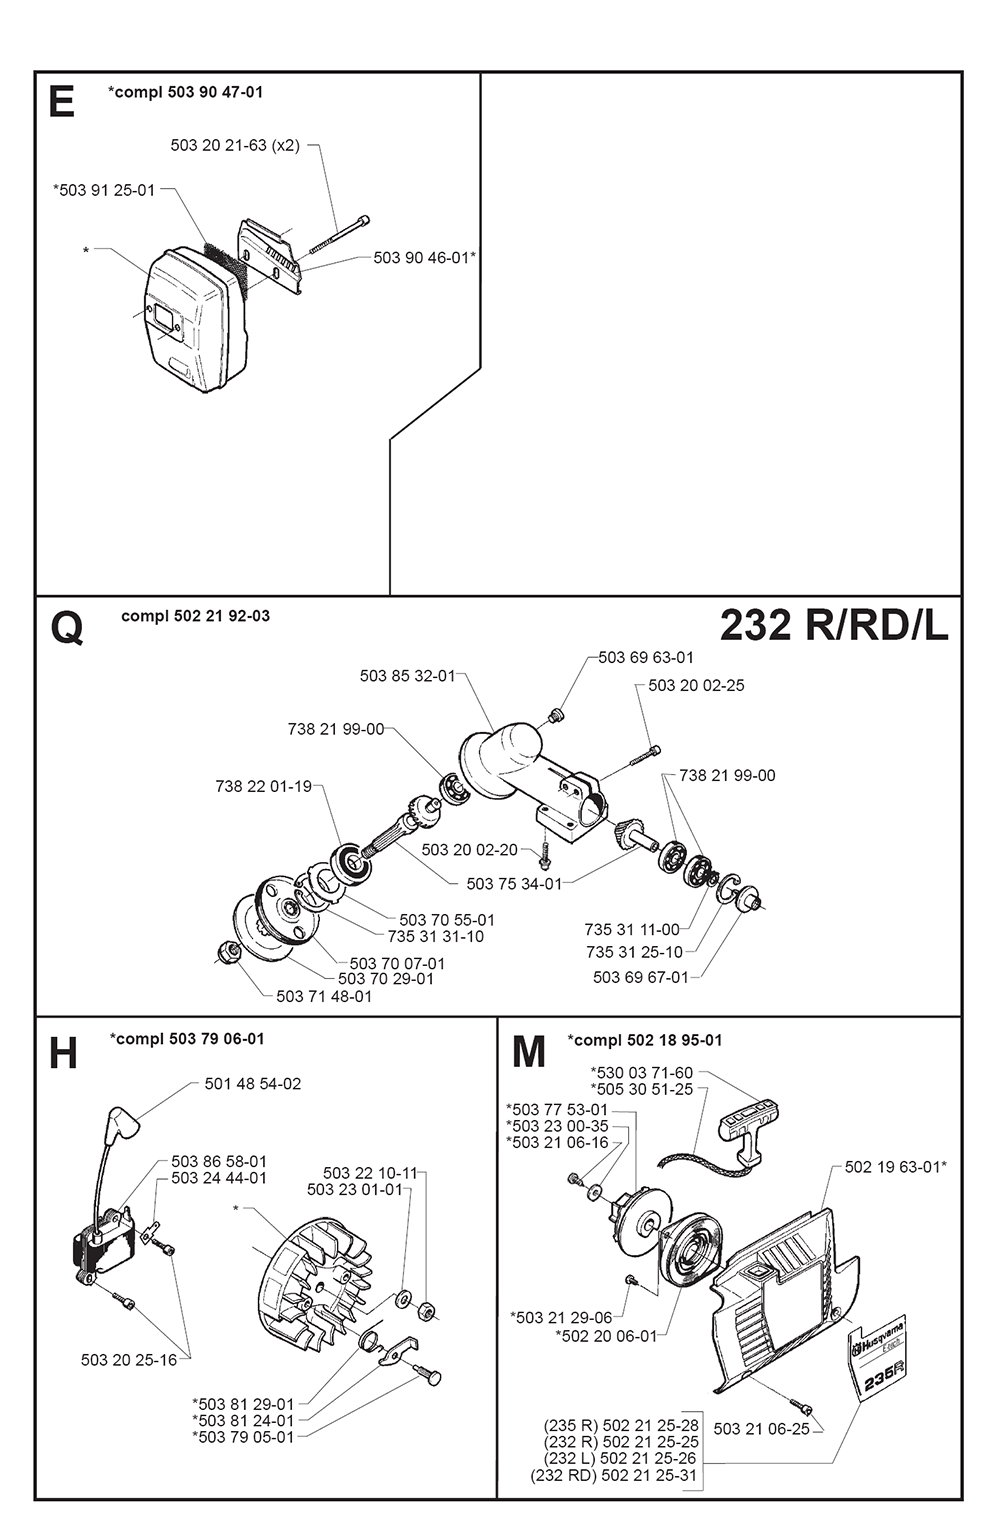 232 R-(I980001)-Husqvarna-PB-1Break Down